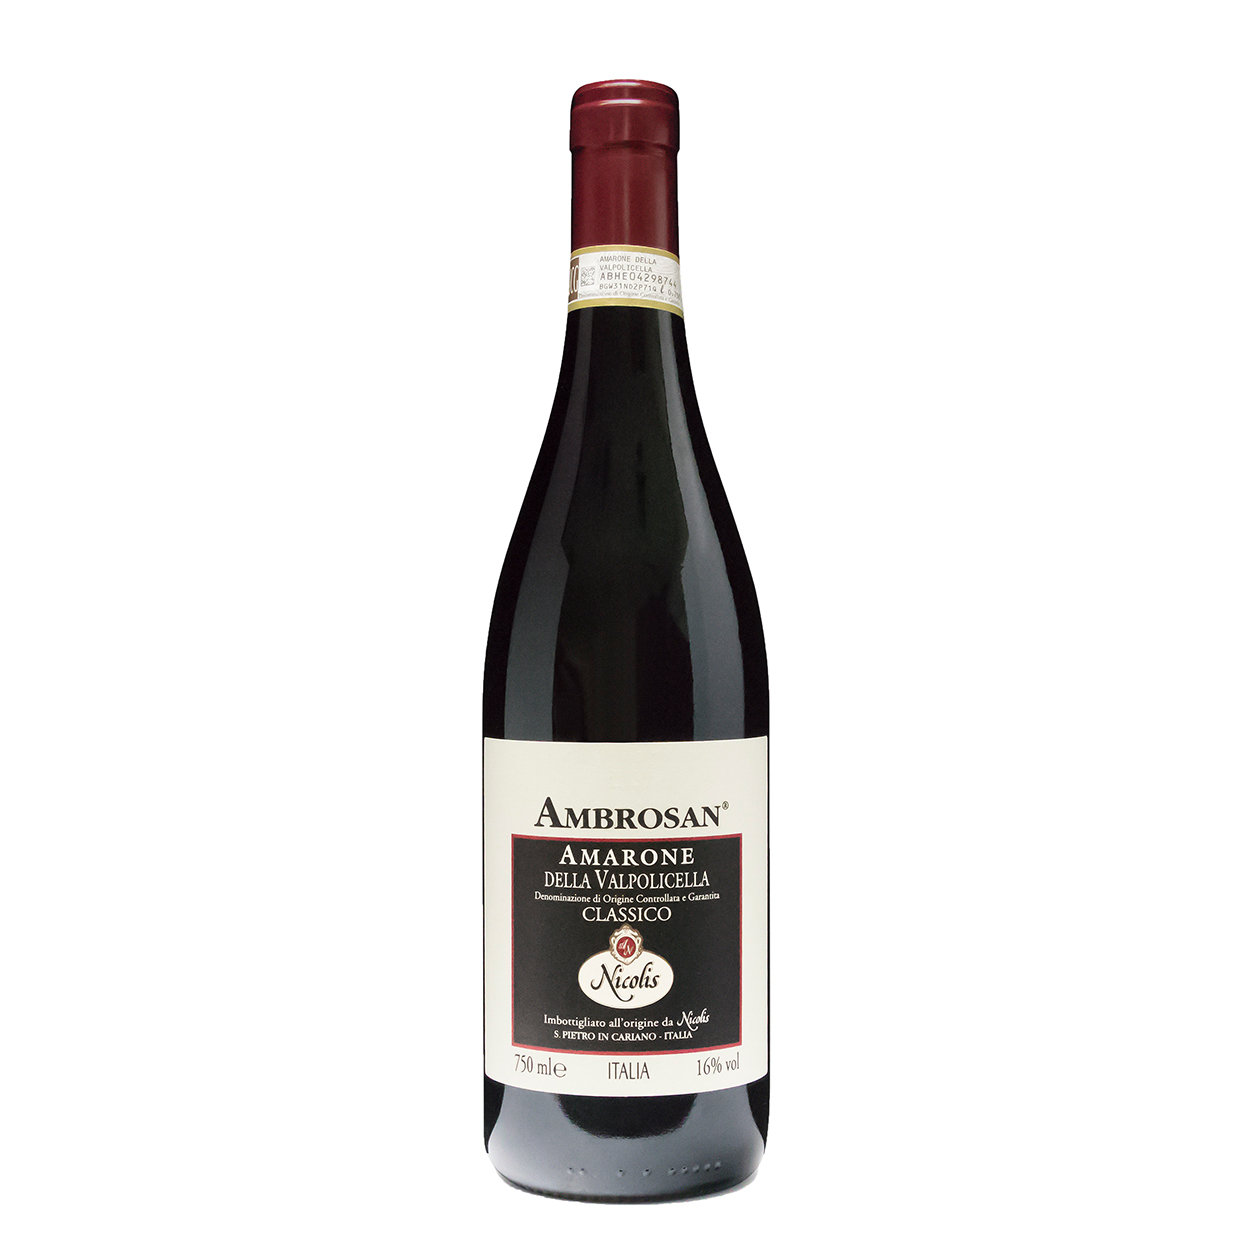 1 bottiglia - "Ambrosan" Amarone della Valpolicella DOCG 2011